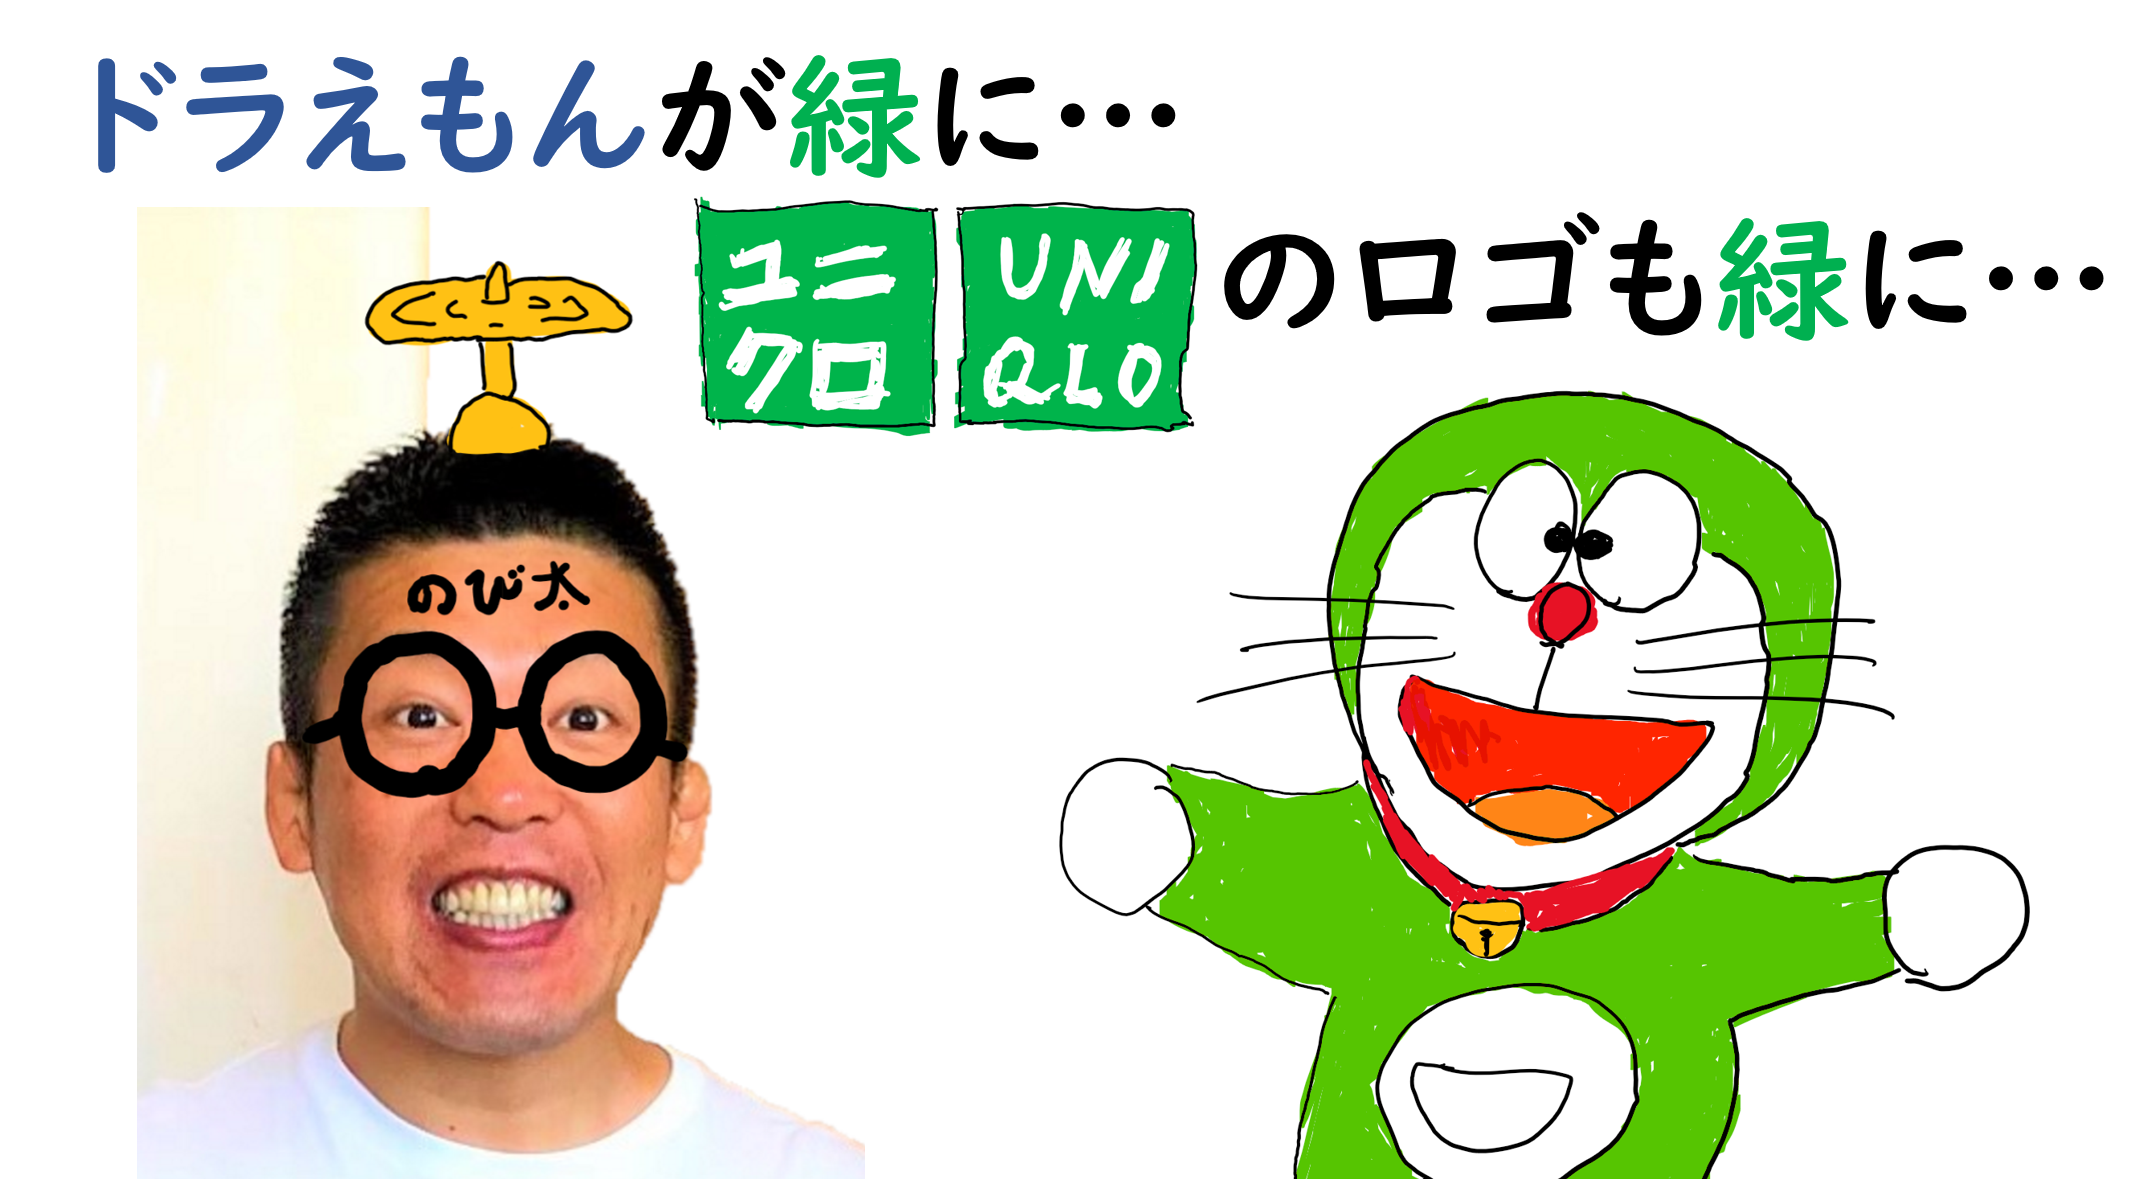 ドラえもんが緑に ユニクロのロゴも緑に Sdgs専門家 セミナー講師 独立起業支援 石川県で活躍中の行政書士事務所